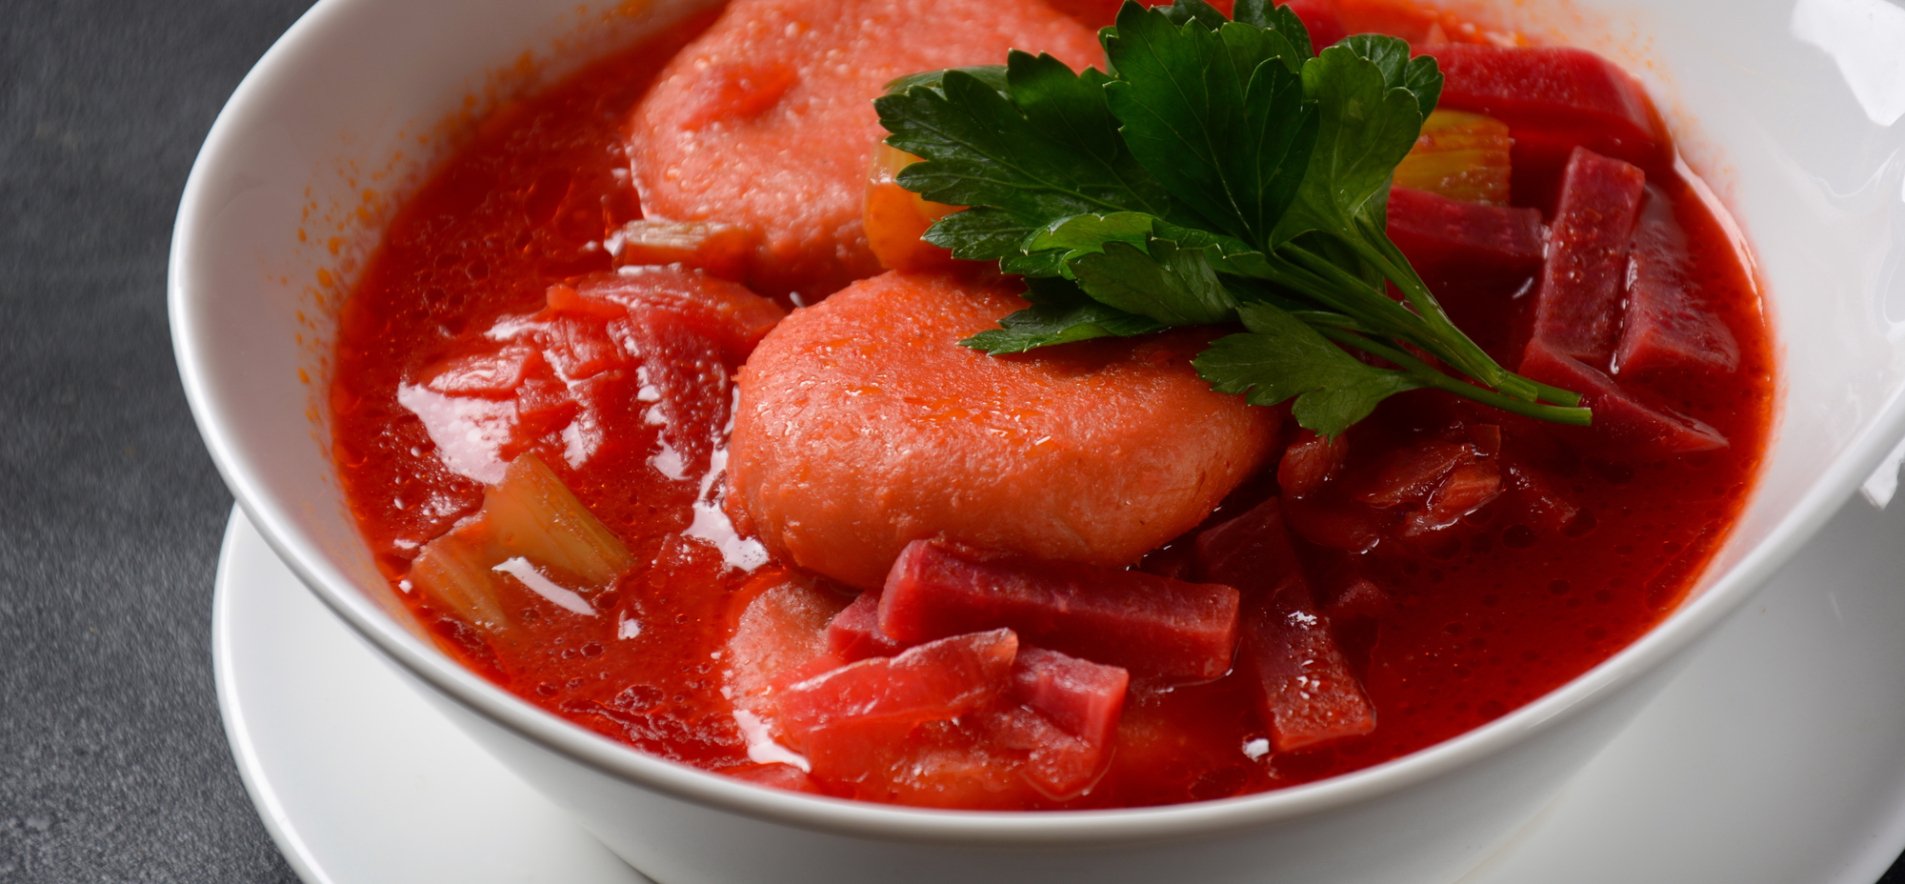 Суп с галушками (54 рецепта с фото) - рецепты с фотографиями на Поварёkormstroytorg.ru